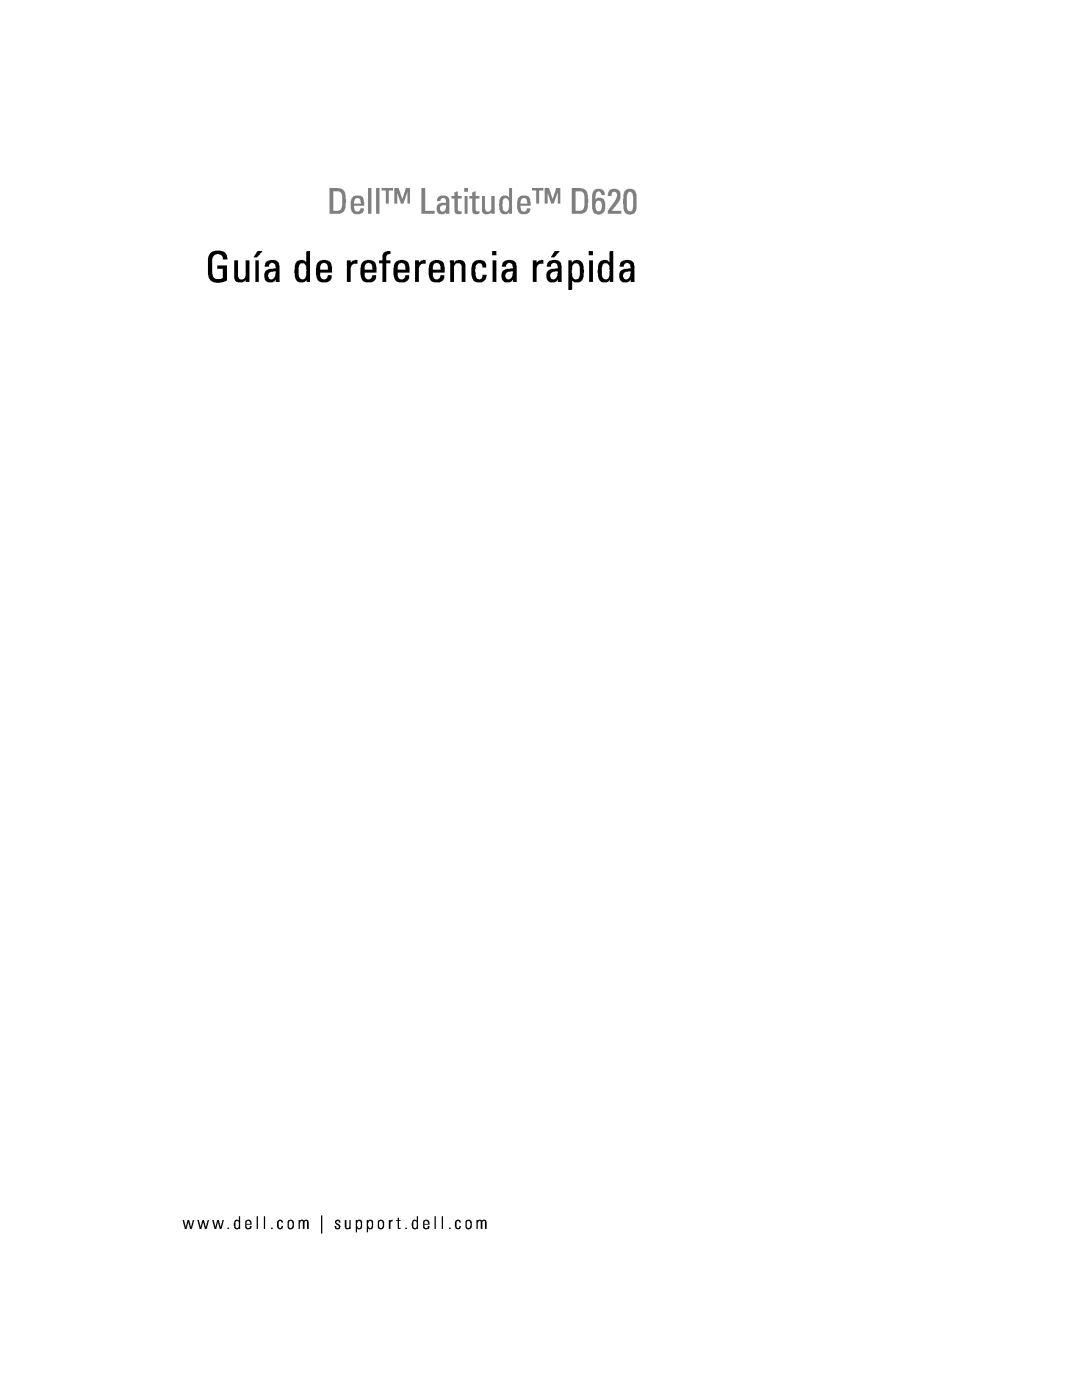 Dell manual Guía de referencia rápida, Dell Latitude D620 